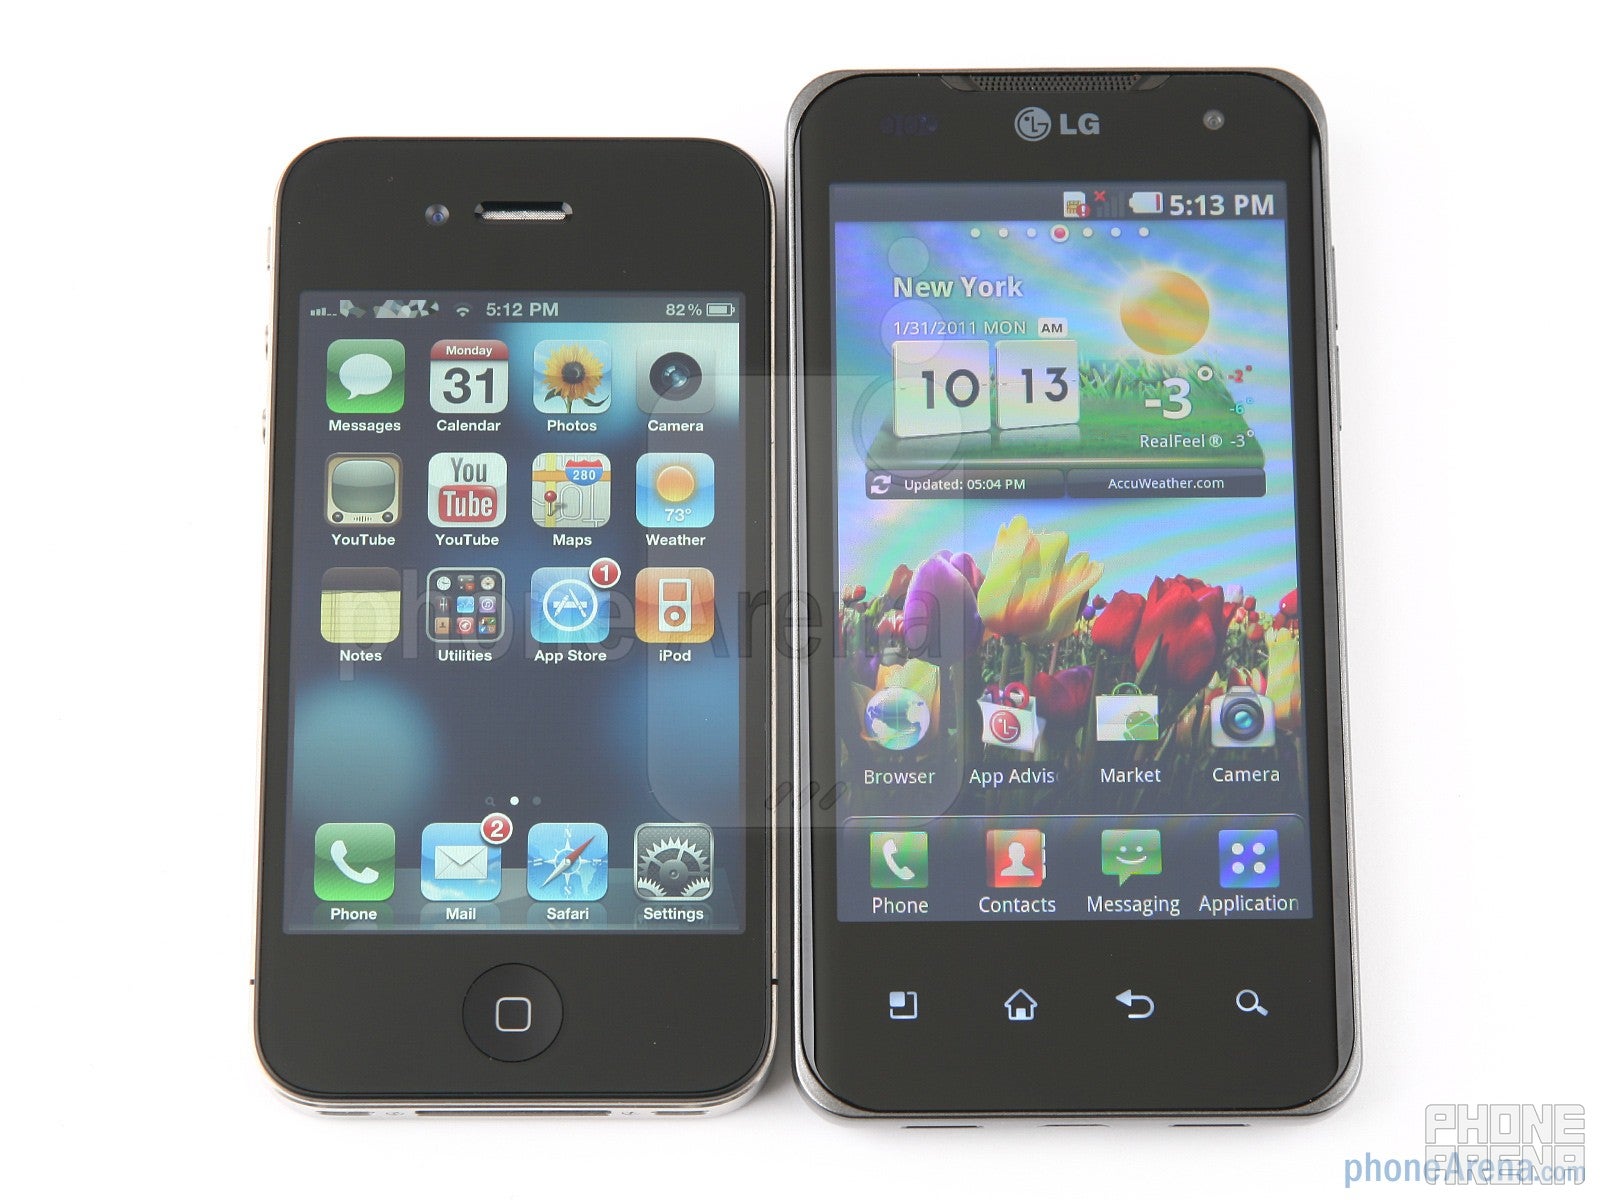 LG Optimus 2X vs Apple iPhone 4